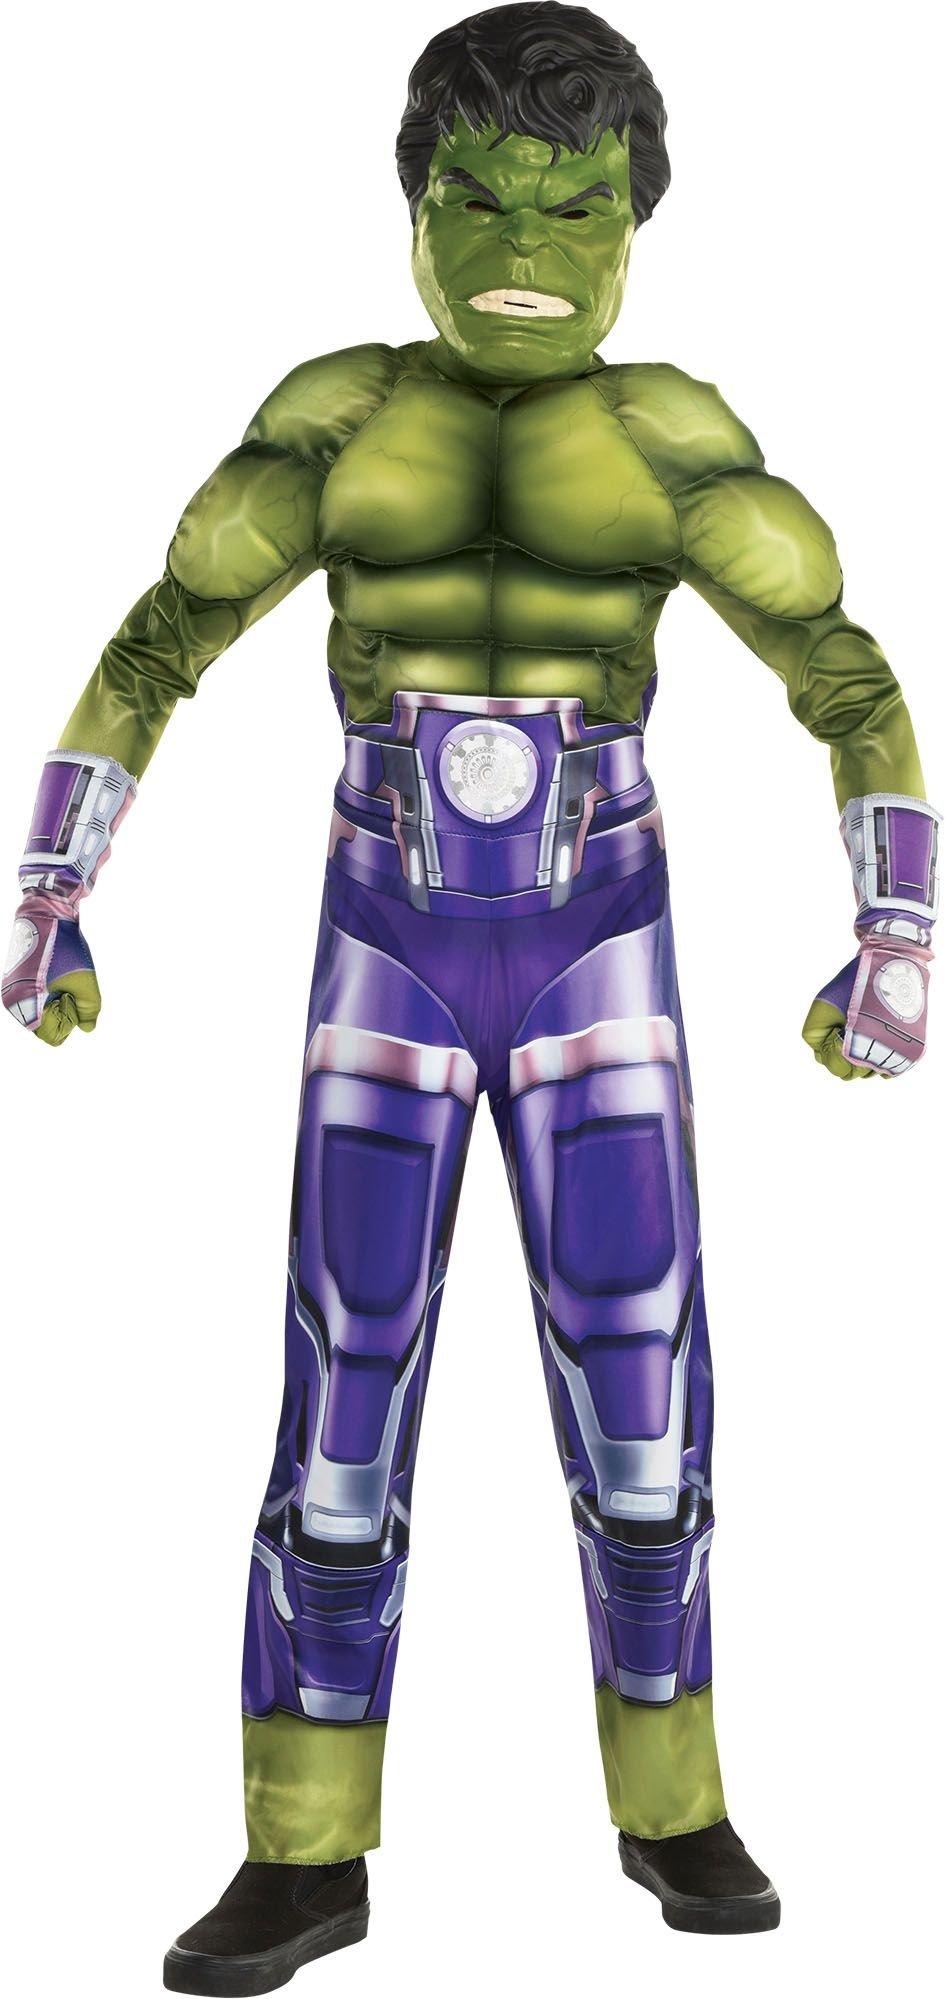 Kids' Hulk Muscle Costume - Marvel's Avengers Game